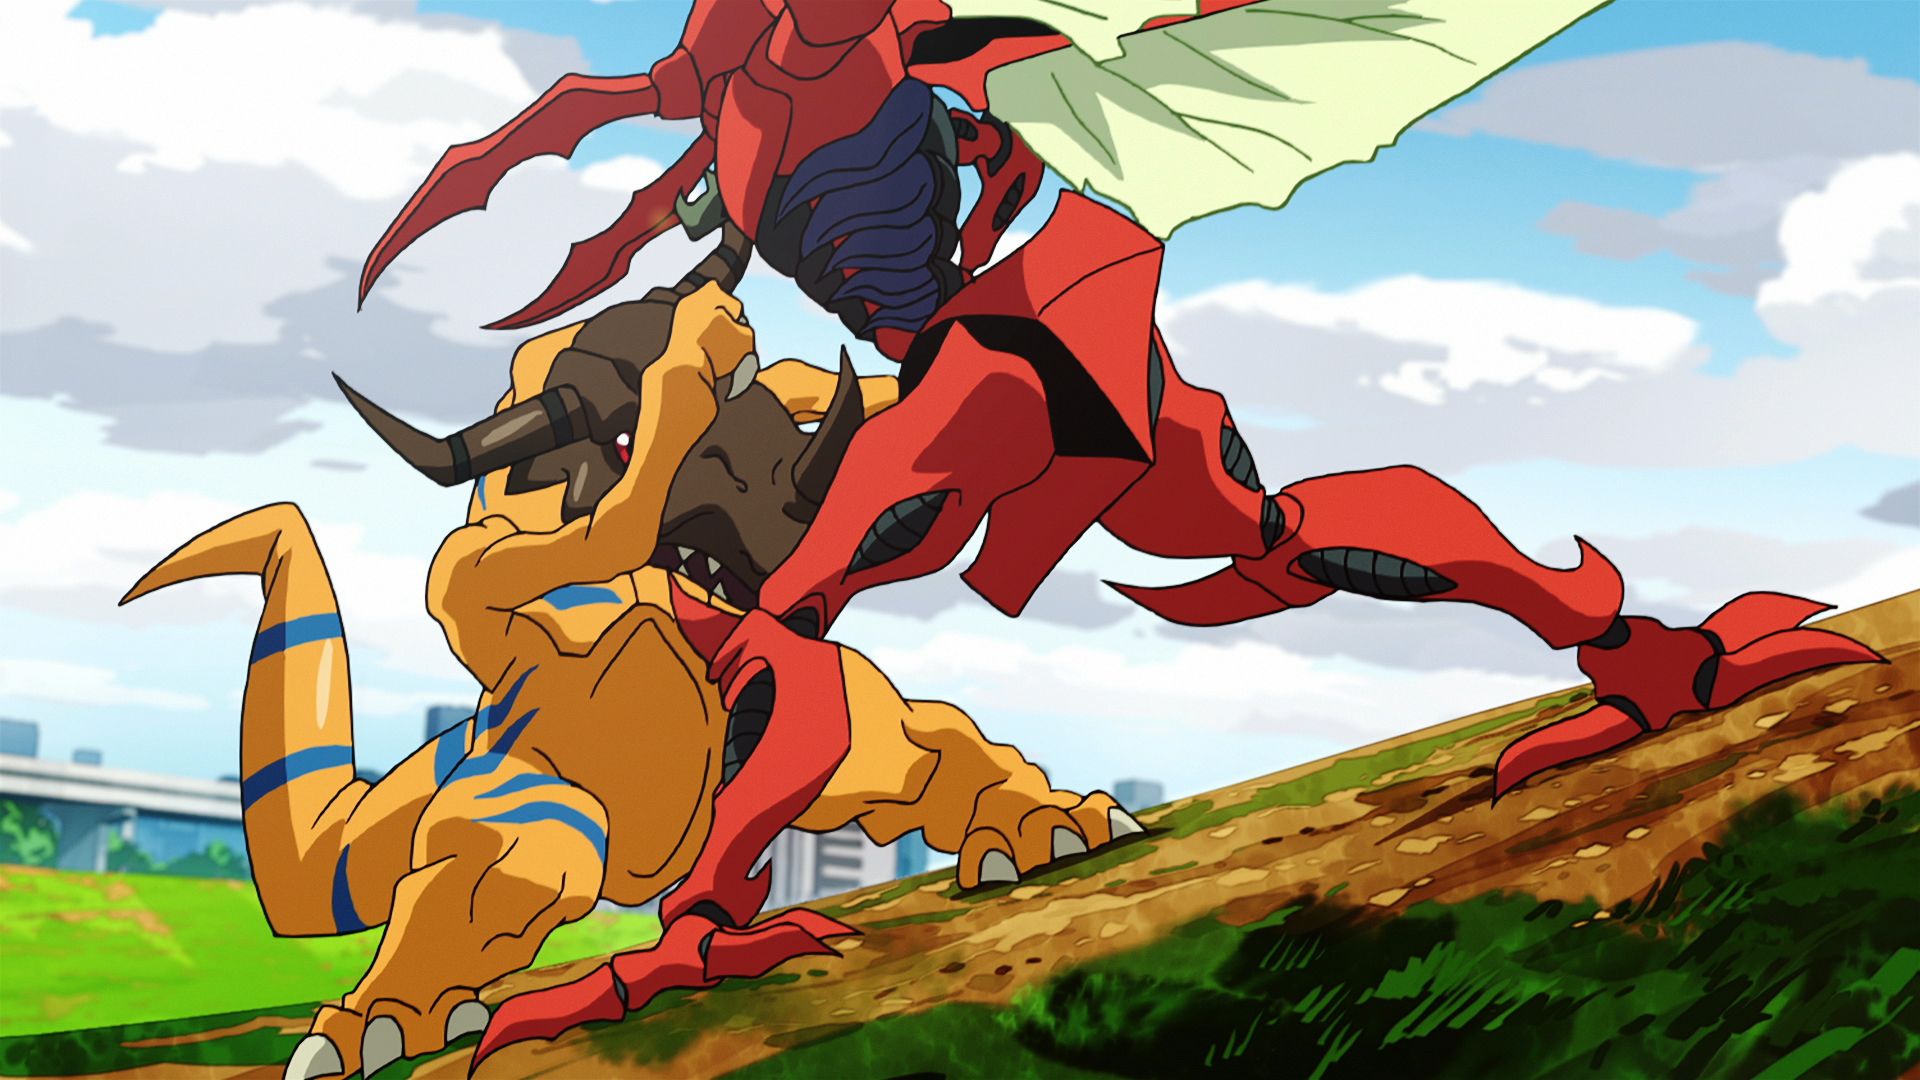 Greymon fighting Kuwagamon in Digimon Tri.